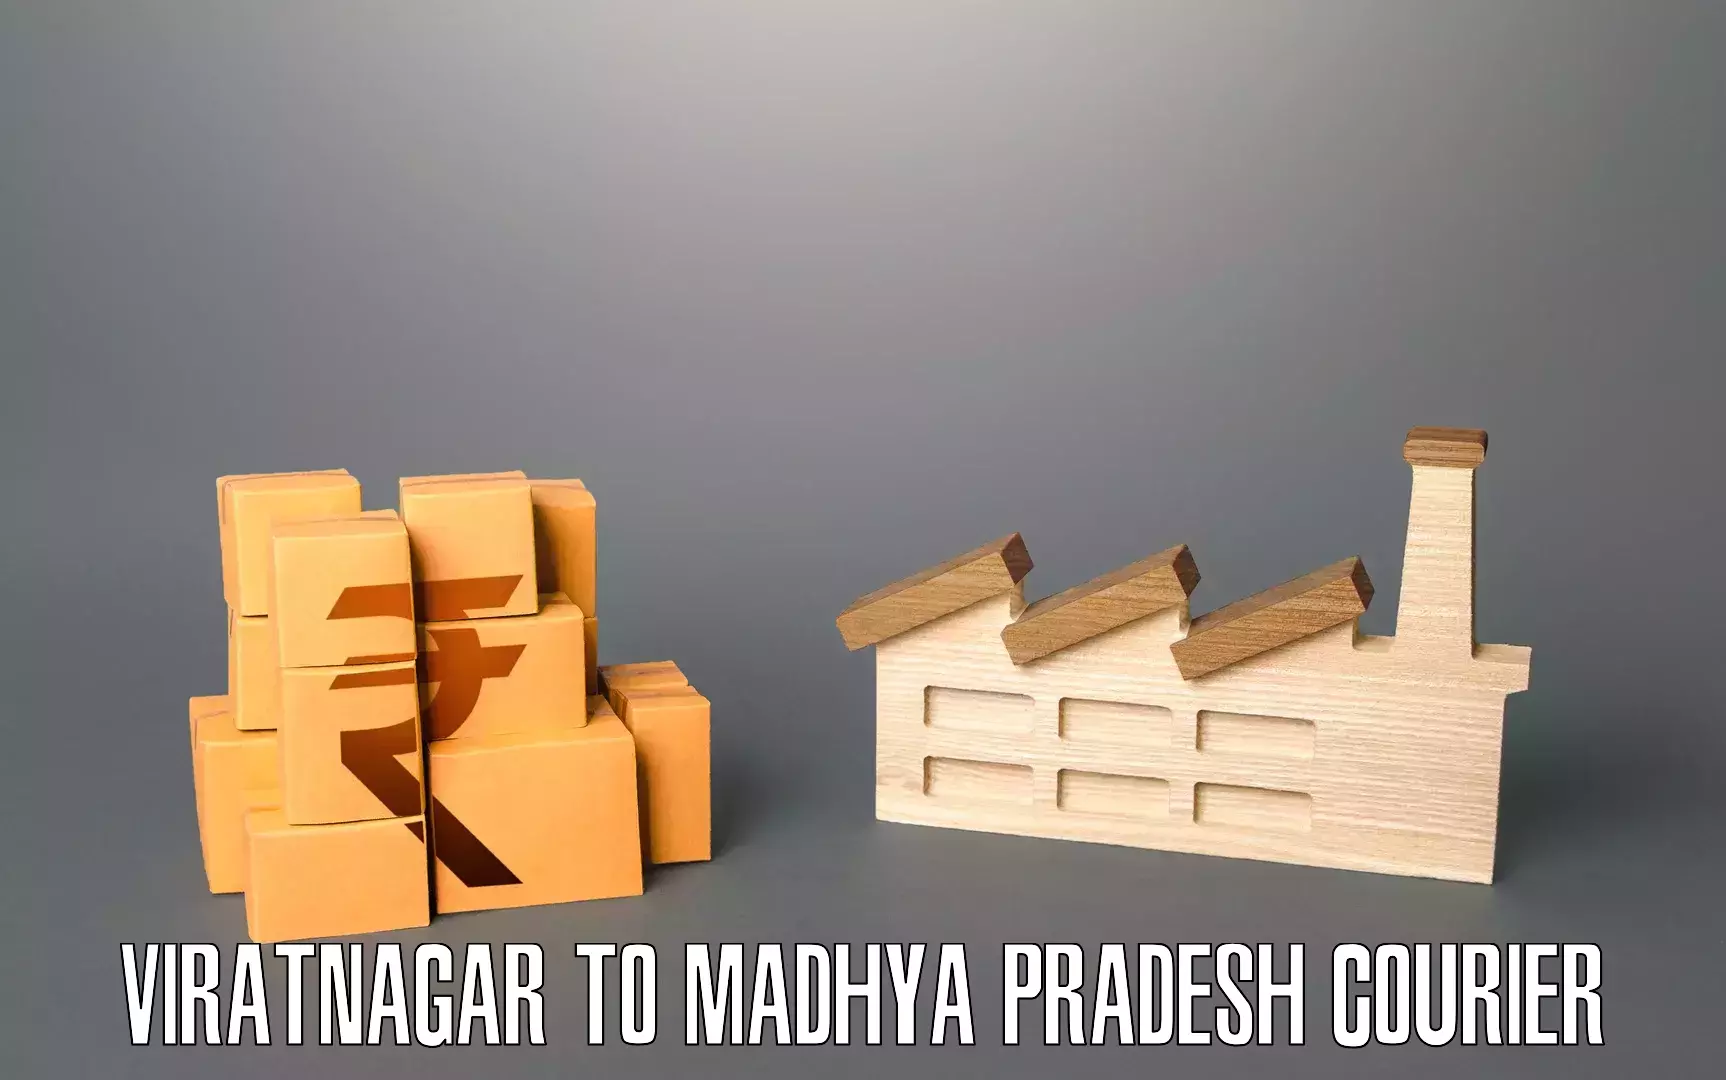 Efficient moving company Viratnagar to Ambah